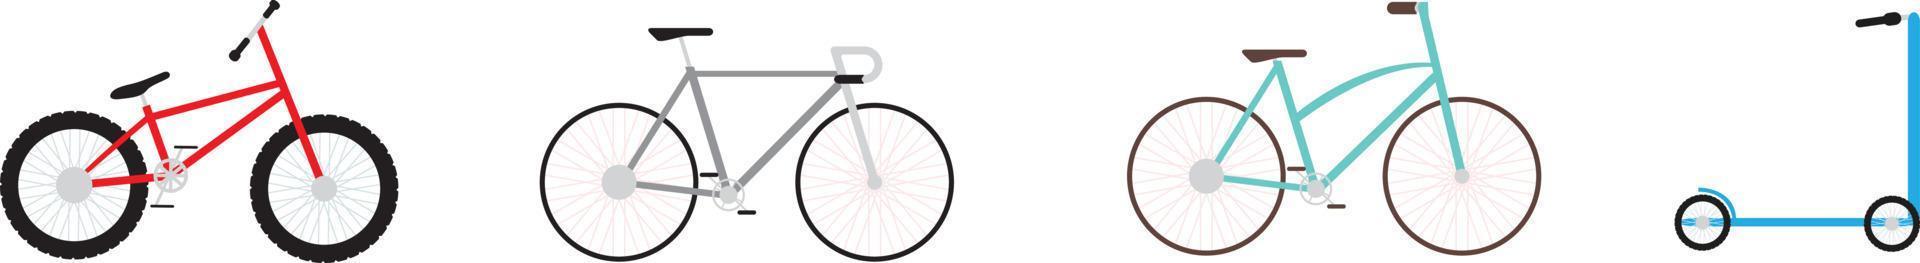 cykel, skoter. hjul enheter för sport på en vit bakgrund vektor